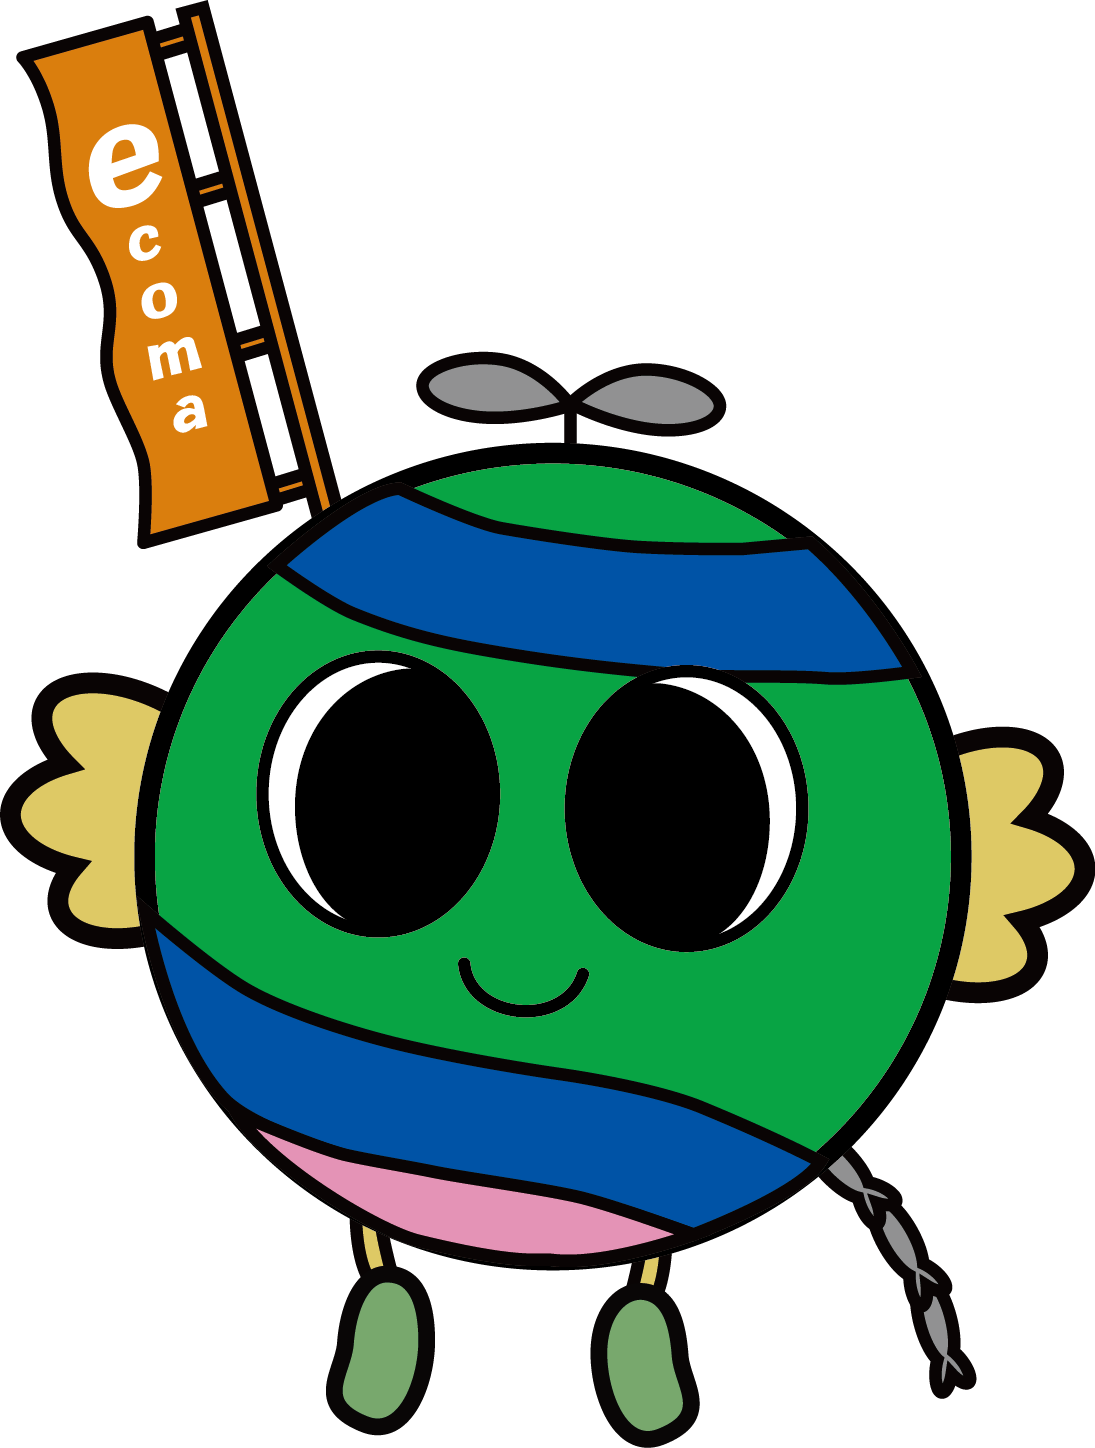 狛江市環境マスコットキャラクター「えこまさん」